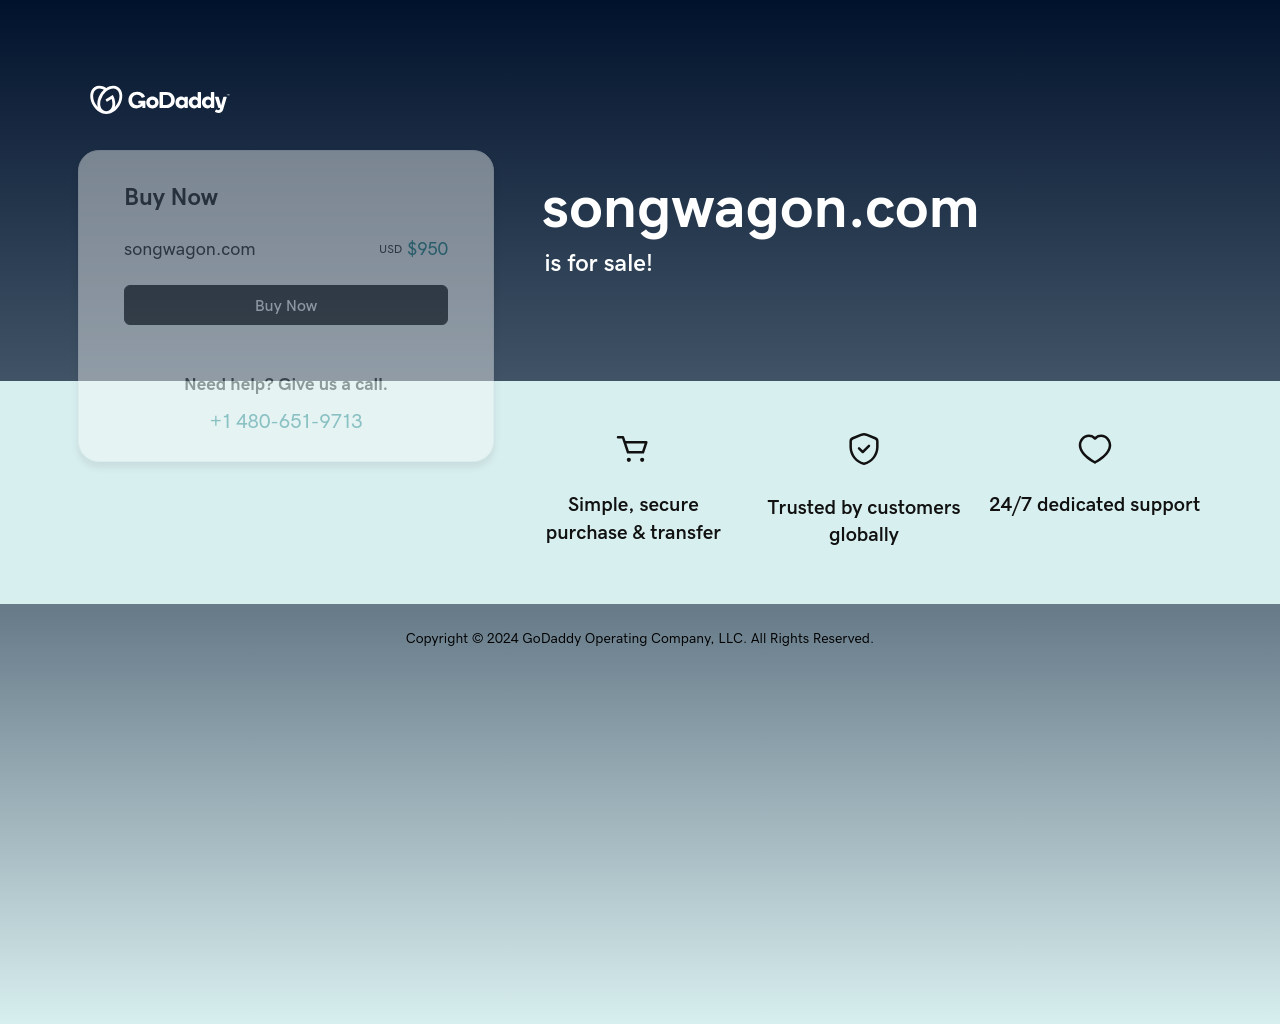 songwagon.com